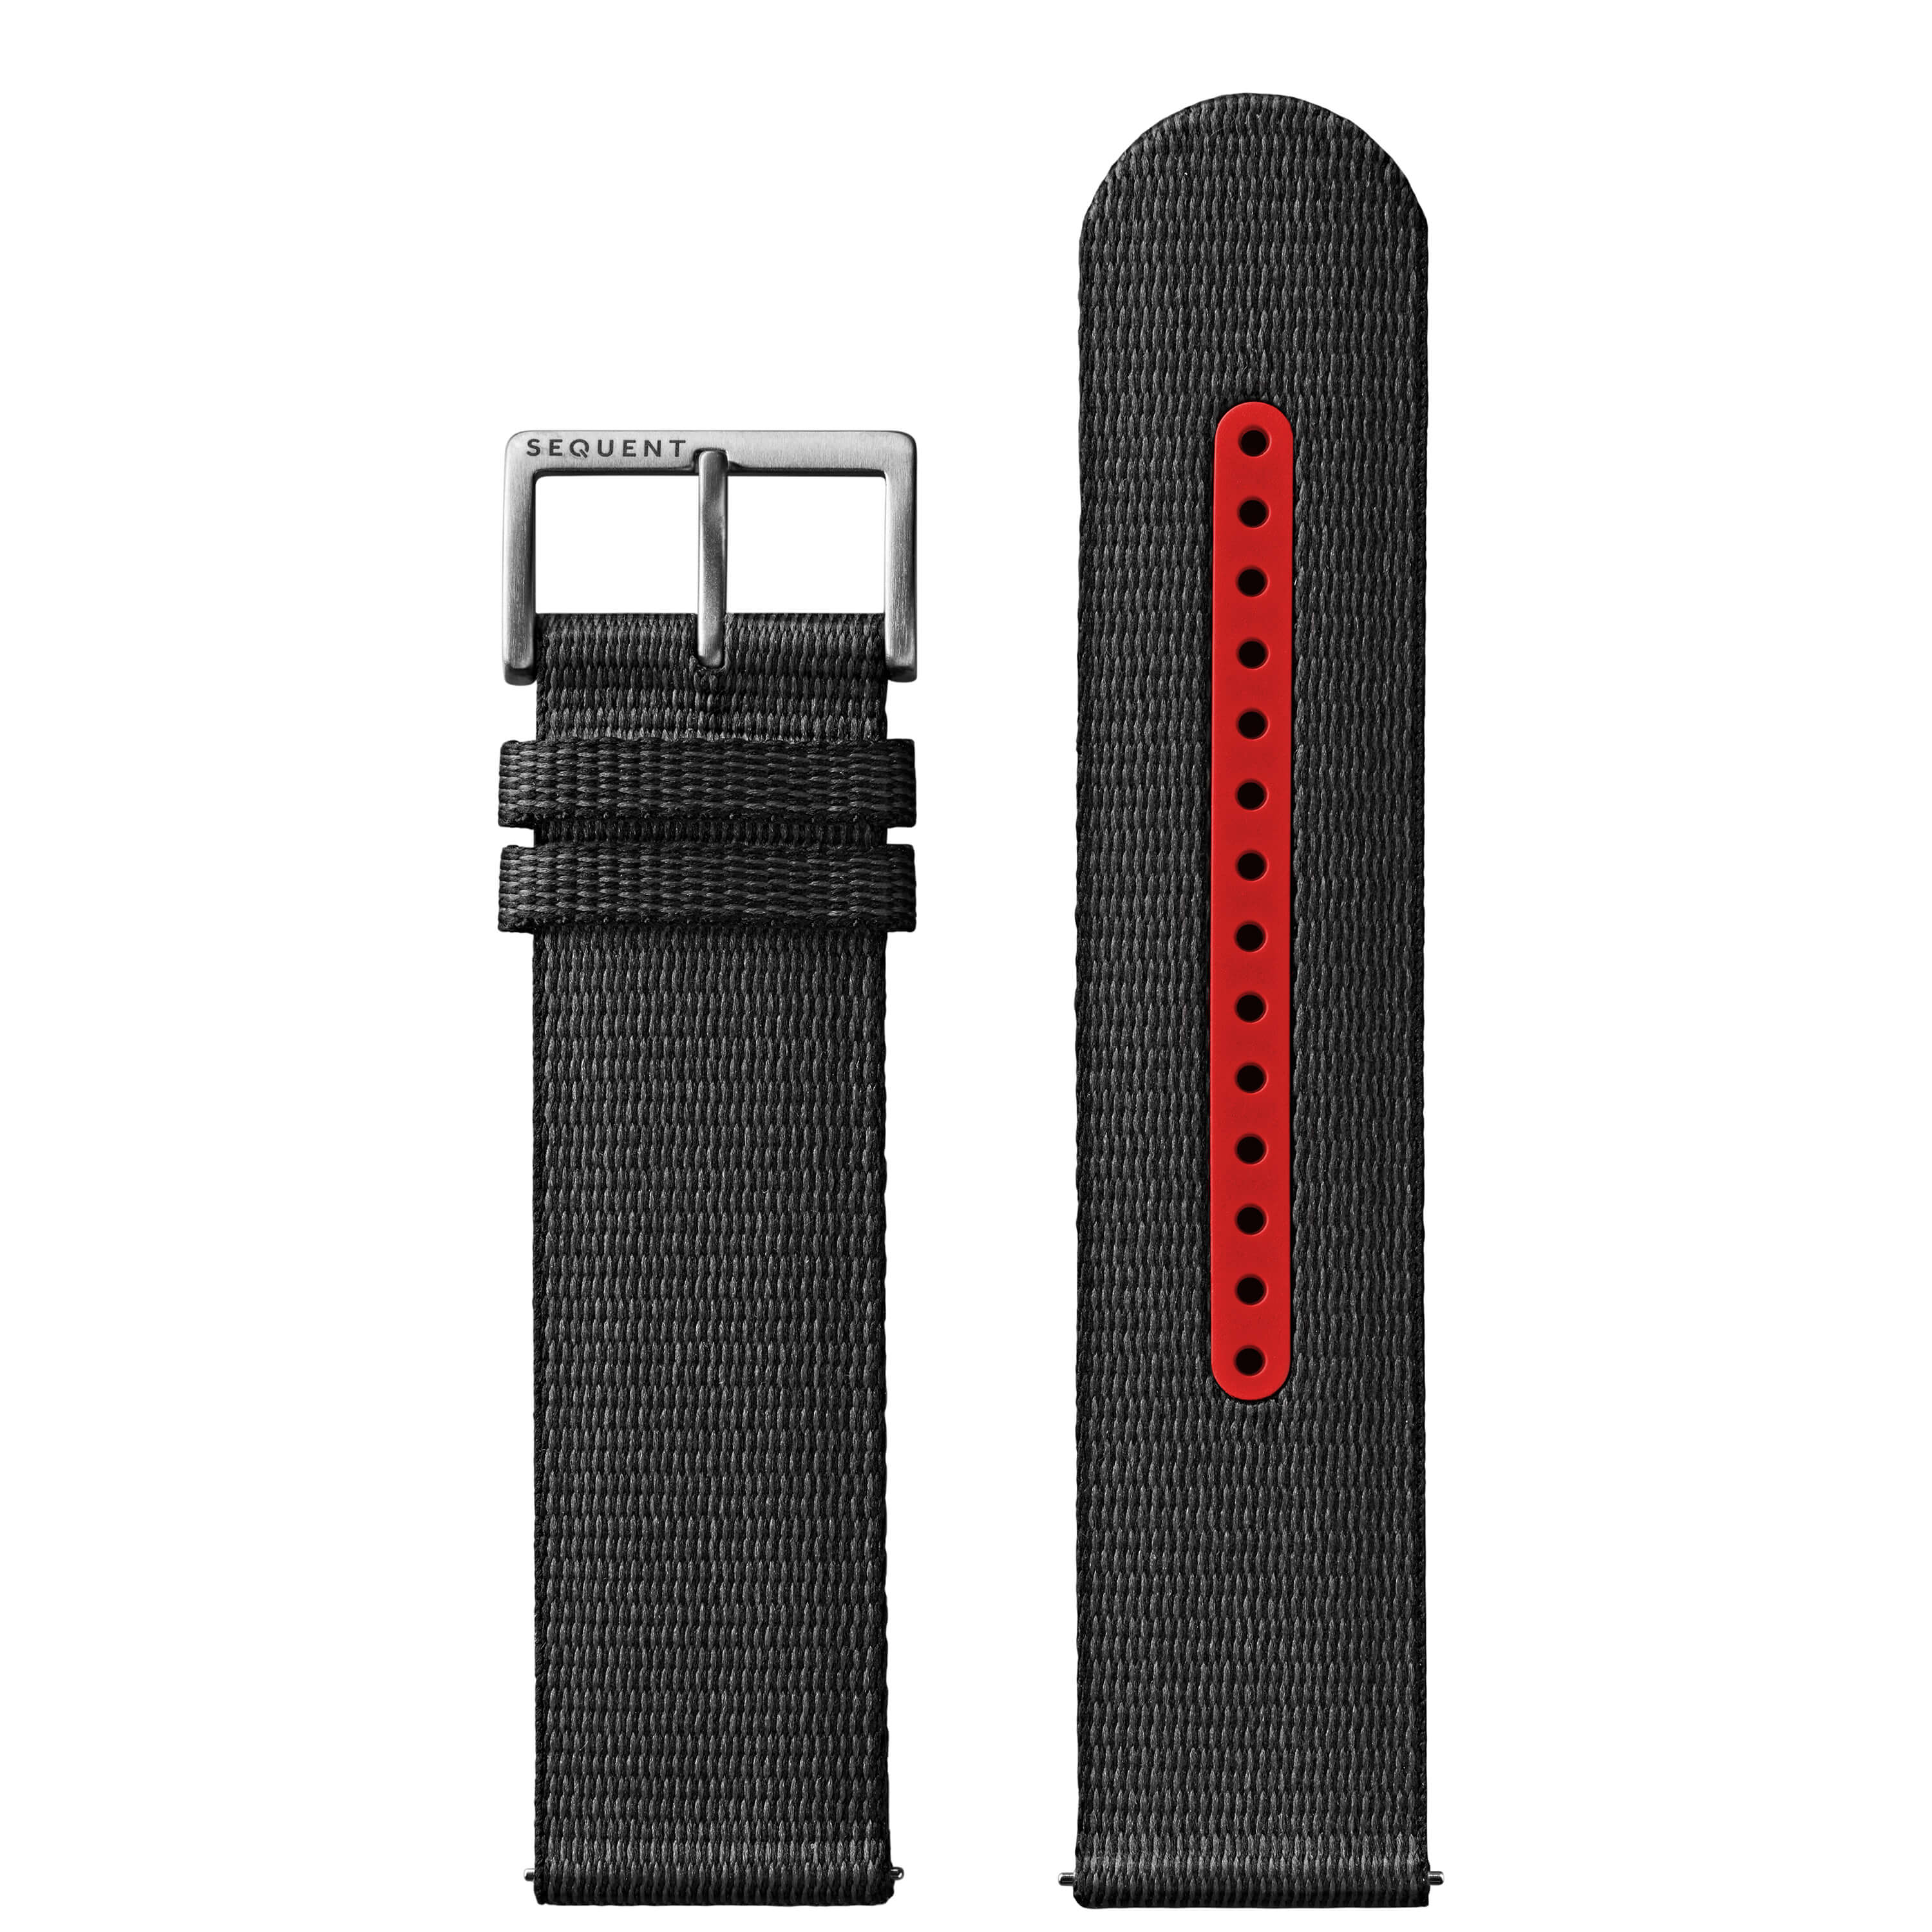 22mm - Black/Red #tide textile strap - Titanium buckle